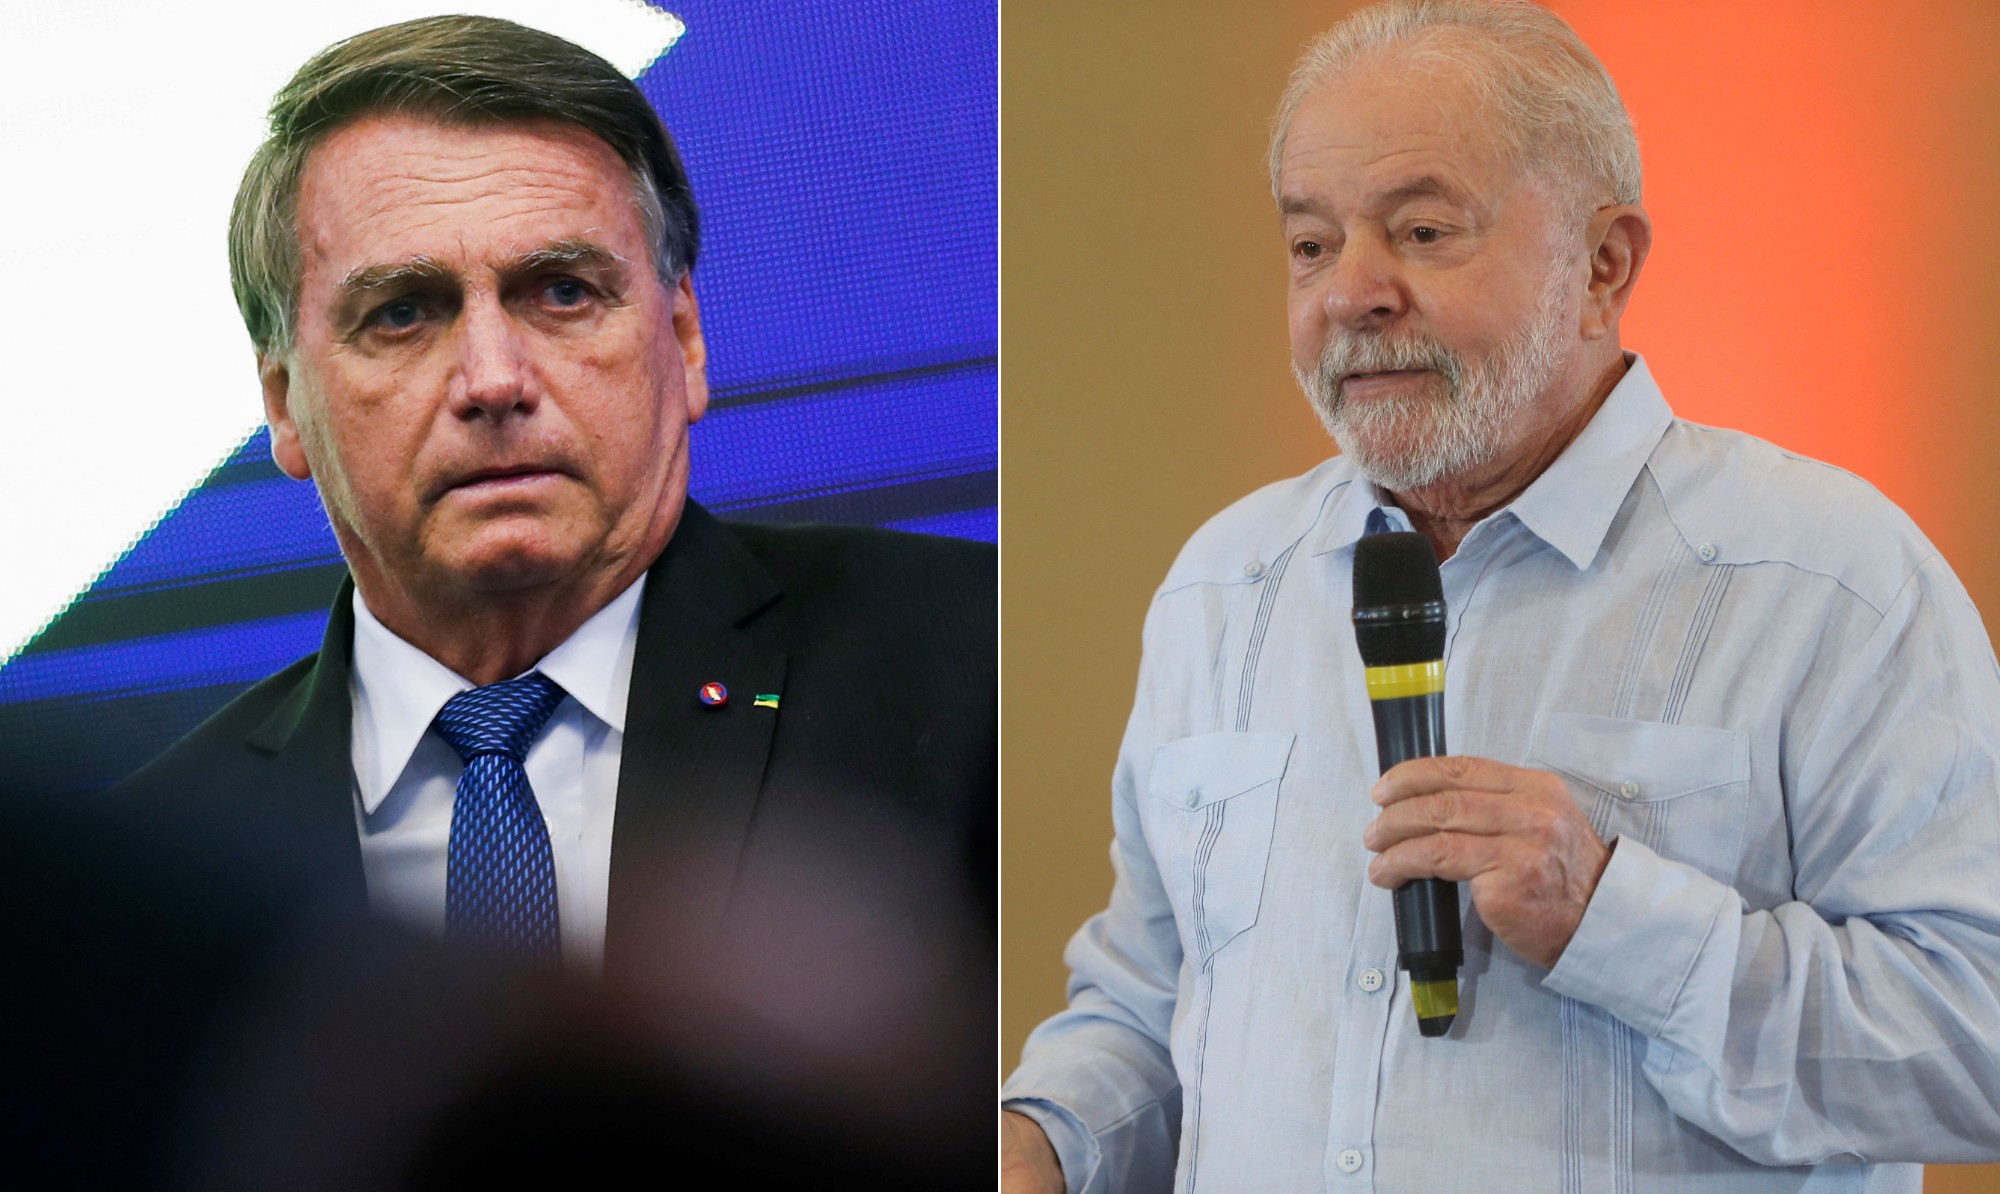 O presidente Jair Bolsonaro e seu principal oponente nas pesquisas de intenção de voto, o ex-presidente Luiz Inácio Lula da Silva